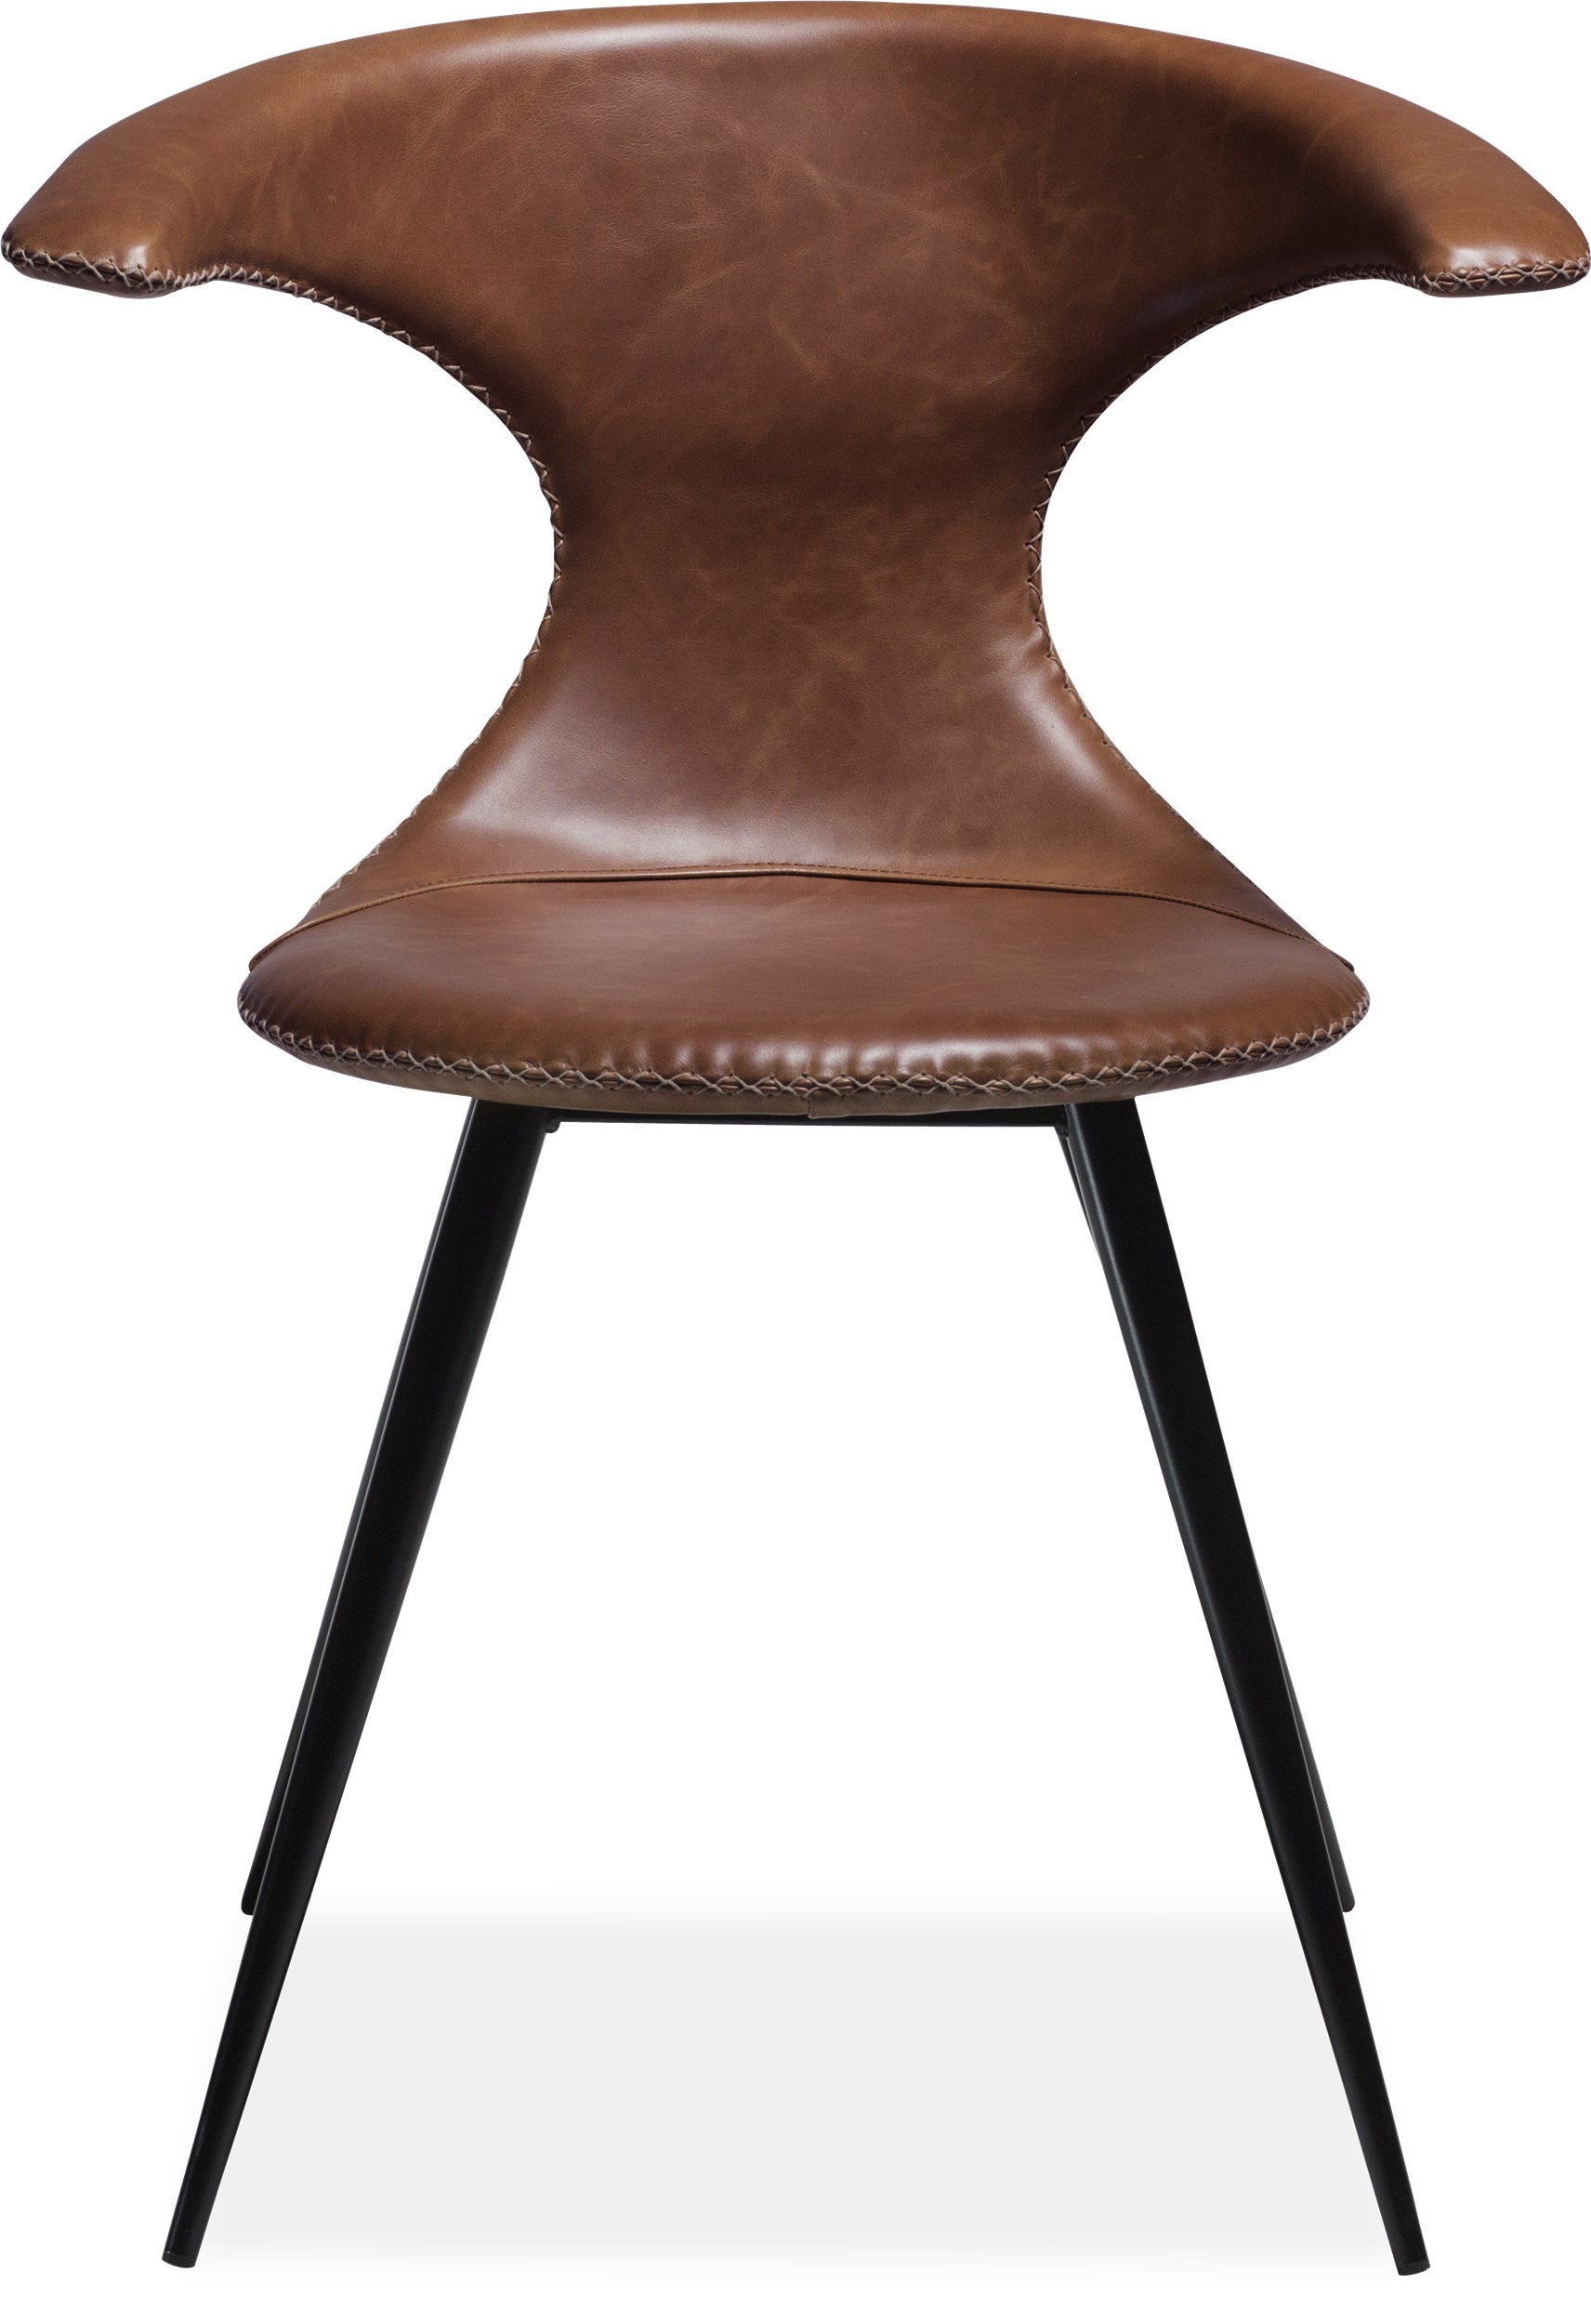 Flaire matstol - Sits i ljusbrunt läder, med kontrastfärgade sömmar och runda ben i svartlackerad metall